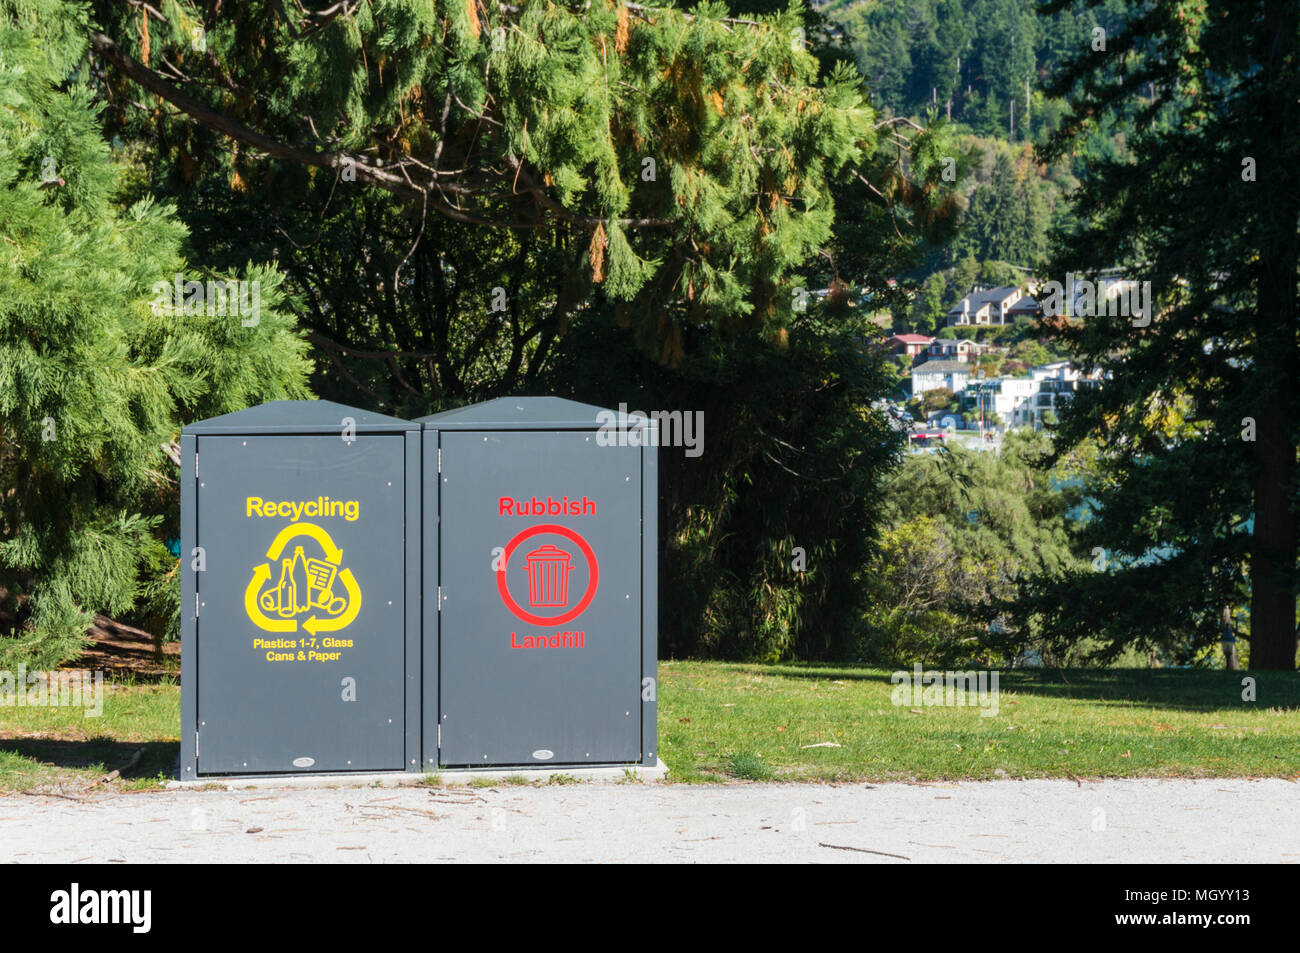 Recycling Bins für Kunststoff Glas und Papier Recycling auch Müll Deponierung in Queenstown Gardens Queenstown, Südinsel Neuseeland nz Stockfoto